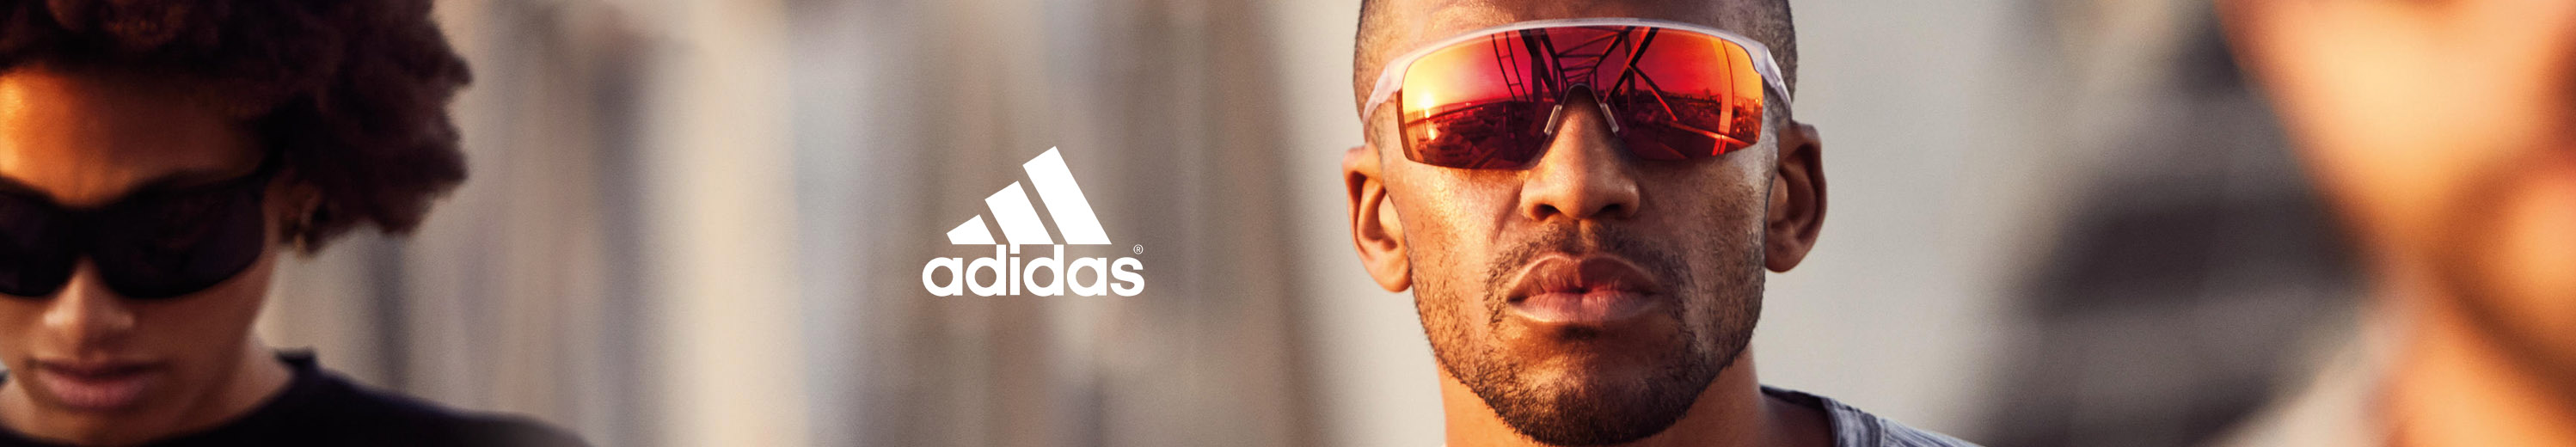 Adidas Glasses and Eyewear